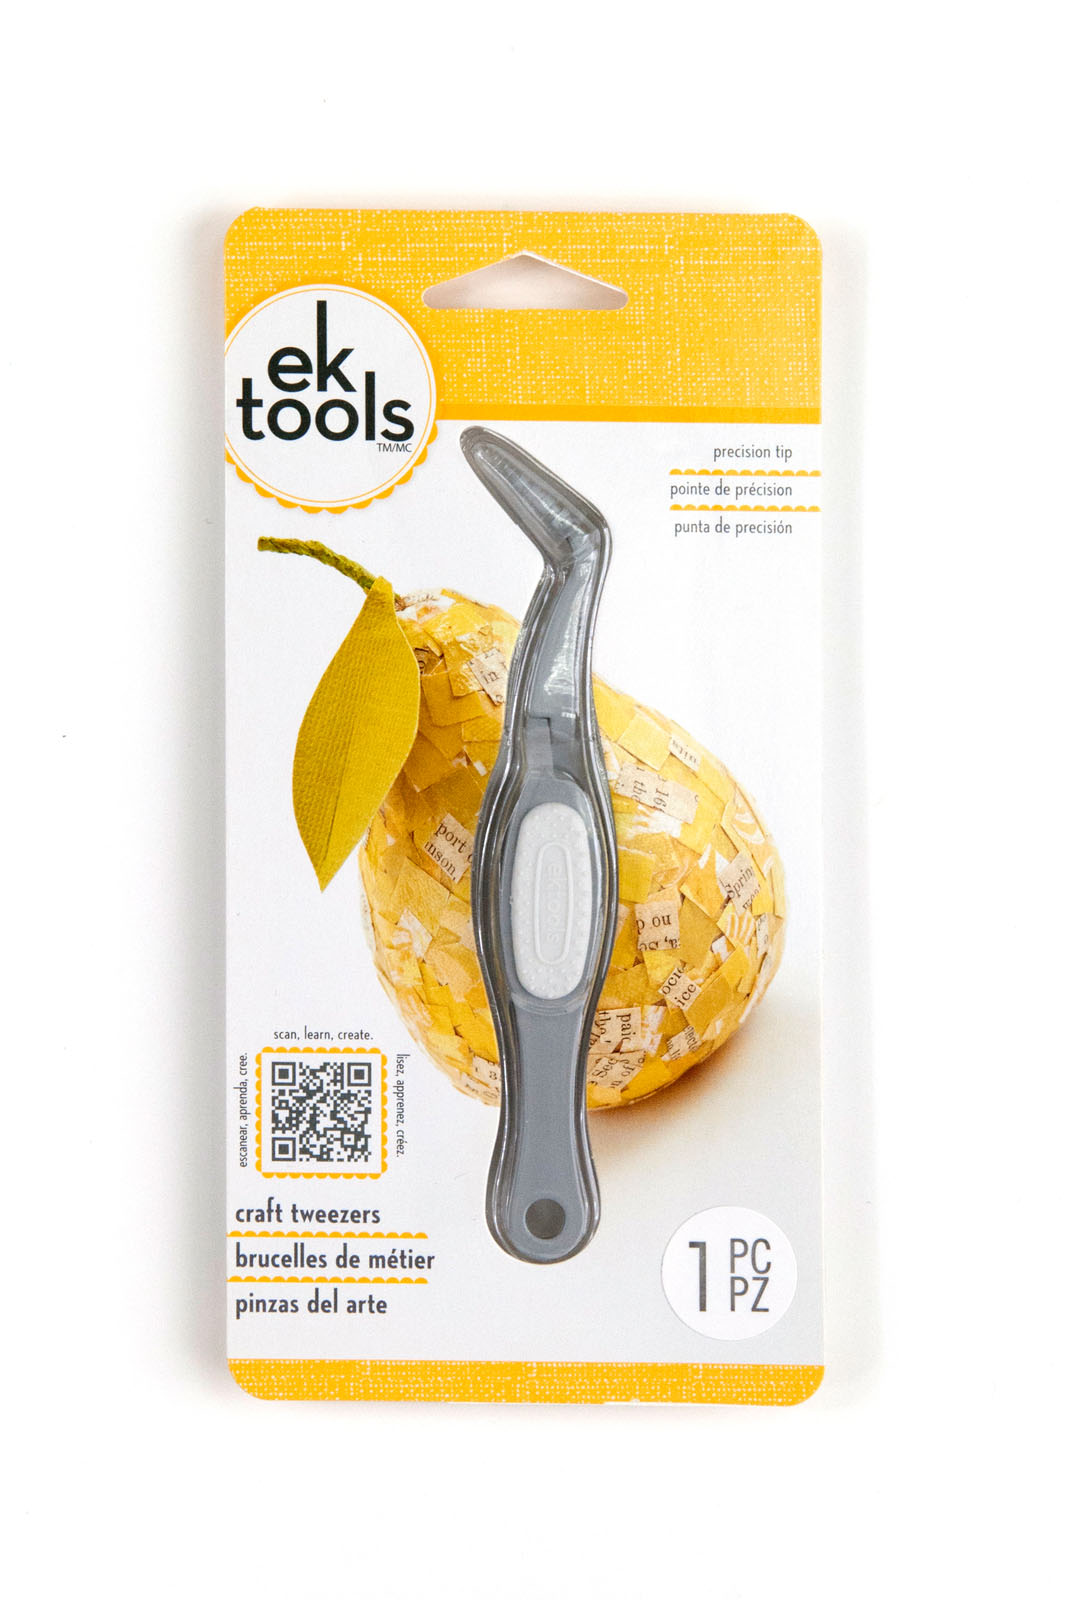 EK tools • Craft tweezers